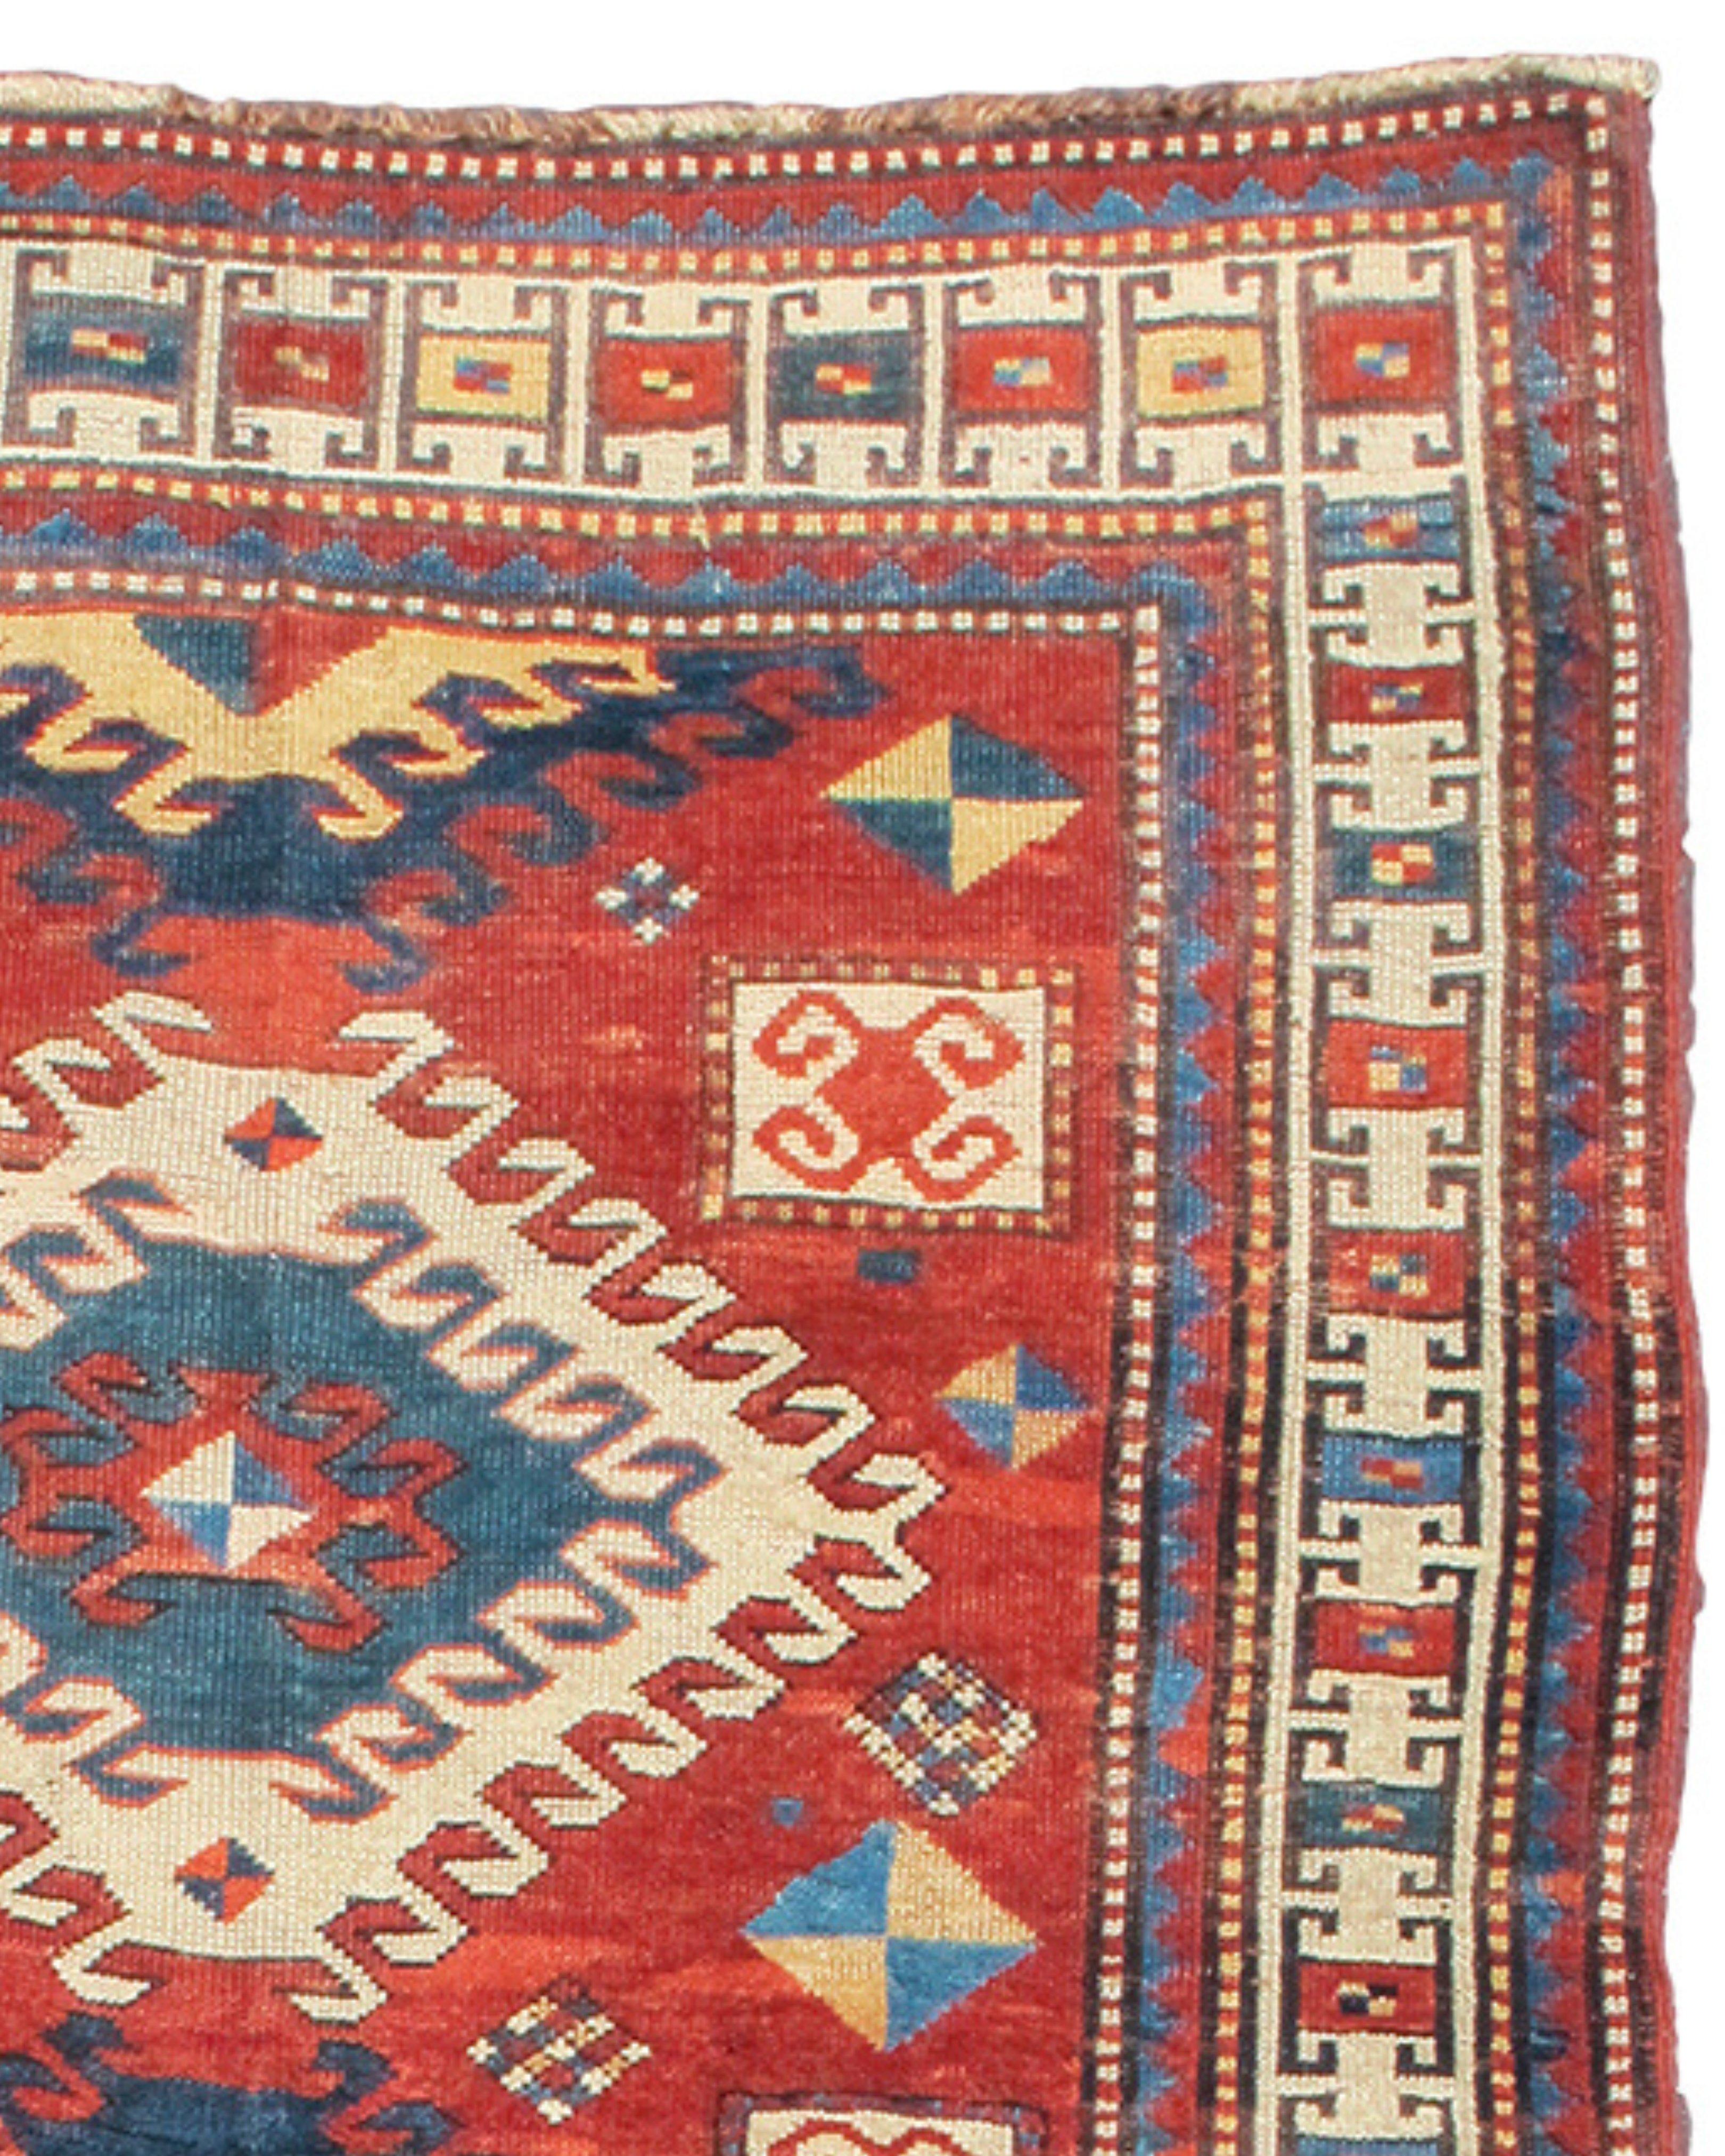 Tapis Bordjalu Kazak, fin du 19e siècle

Tissés dans les villages reculés des montagnes du Caucus, les tapis kazakhs sont réputés pour leur graphisme audacieux et la pureté de leurs couleurs. Cette variante du Bordjalu Kazak dessine trois diamants à